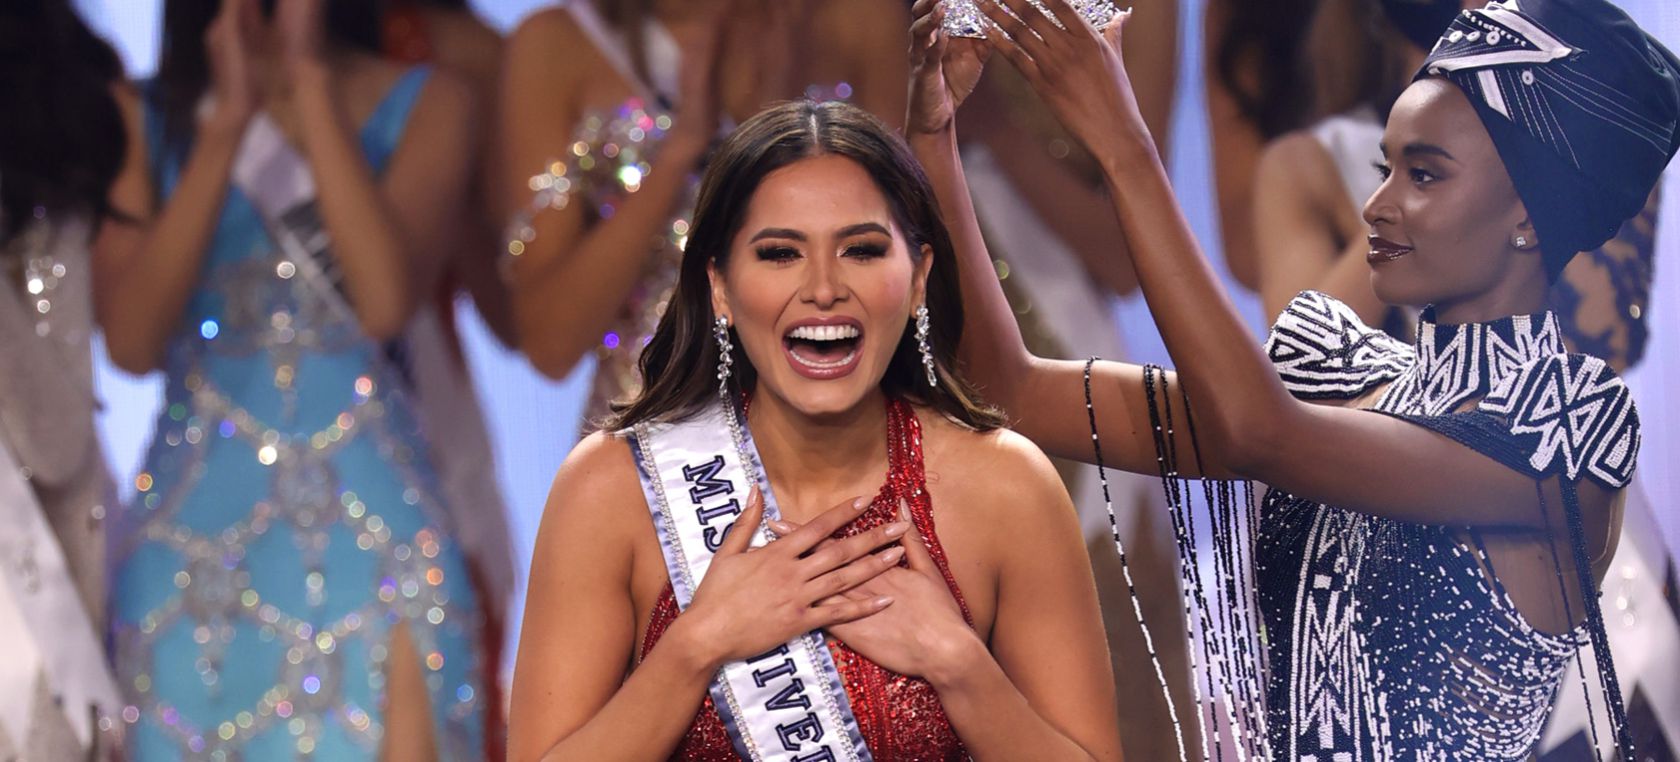 La mexicana Andrea Meza se convierte en Miss Universo tras su aplaudida respuesta sobre el COVID-19